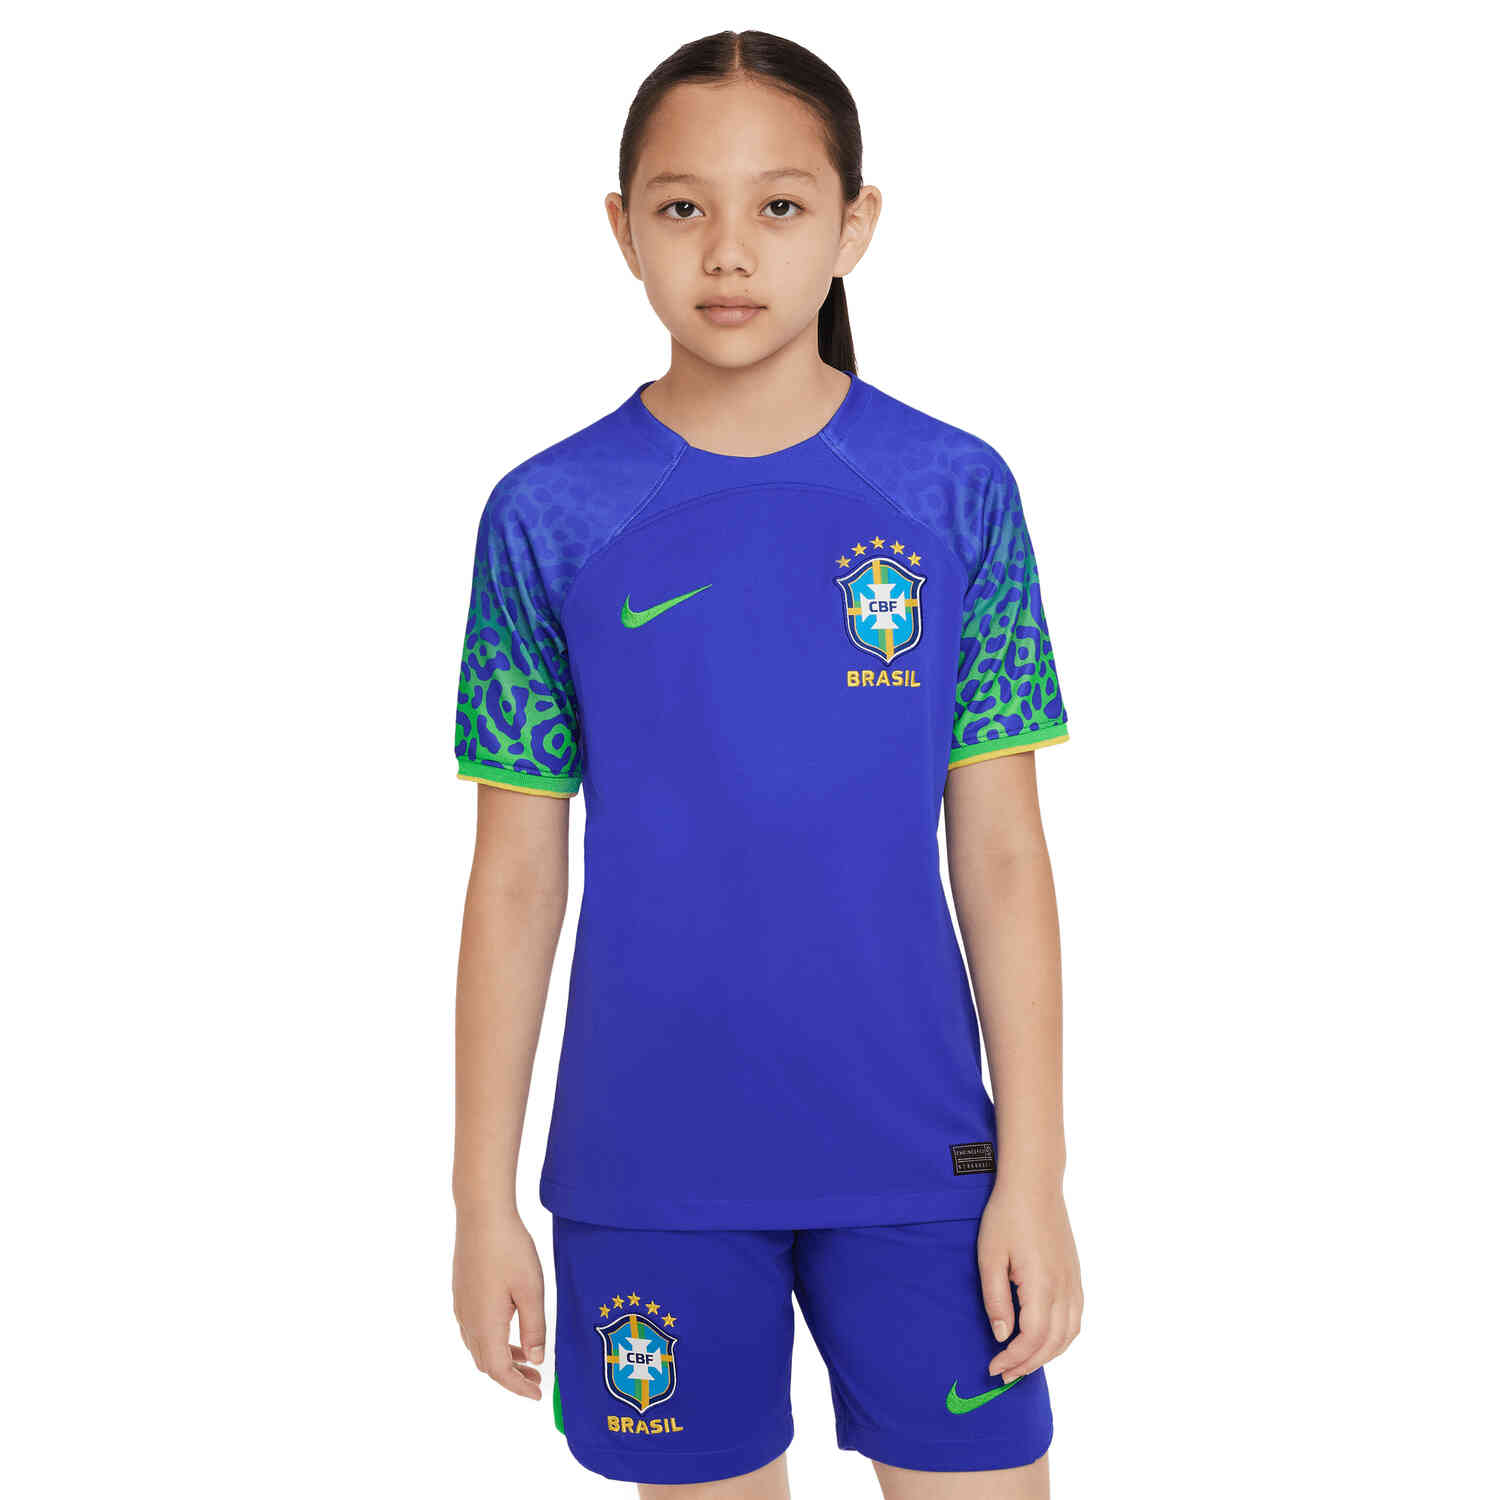 Nike Brazil 3rd Jersey - 2017 Brazil Soccer Jerseys